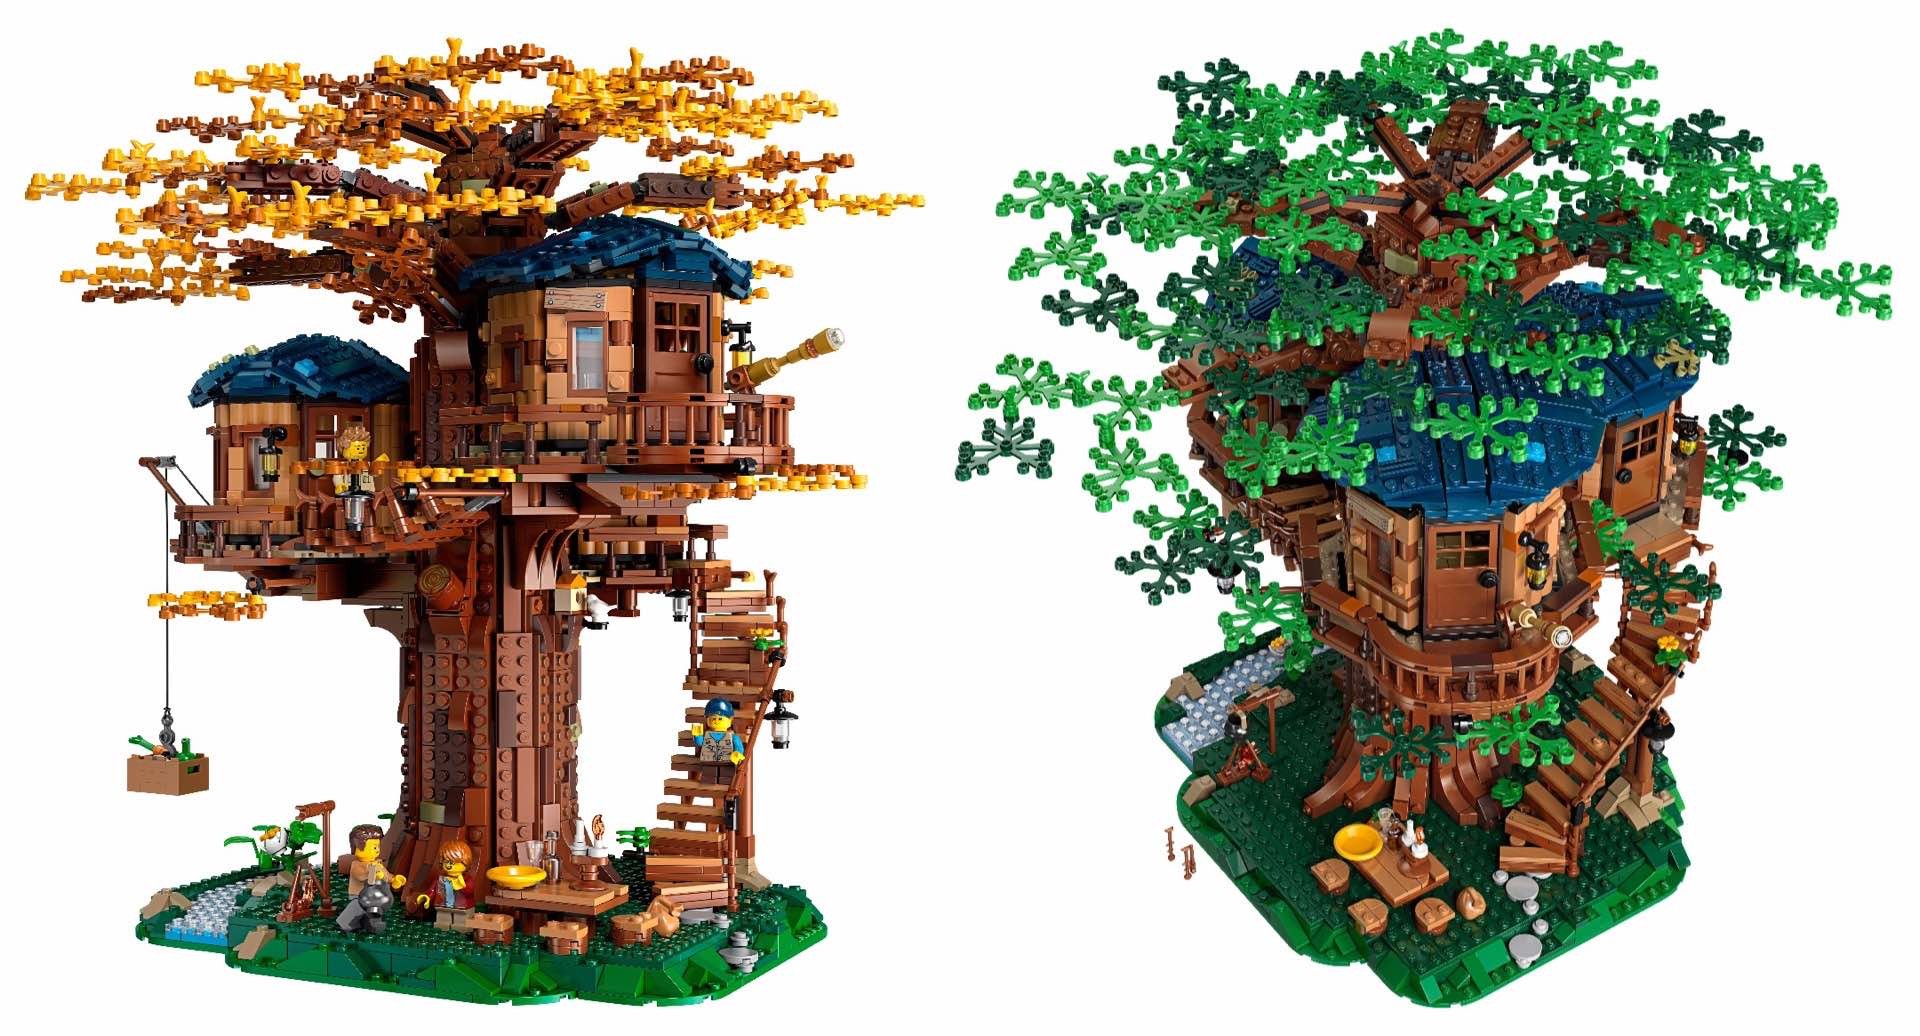 lego-ideas-21318-tree-house-model-construction-set-leaves-seasons